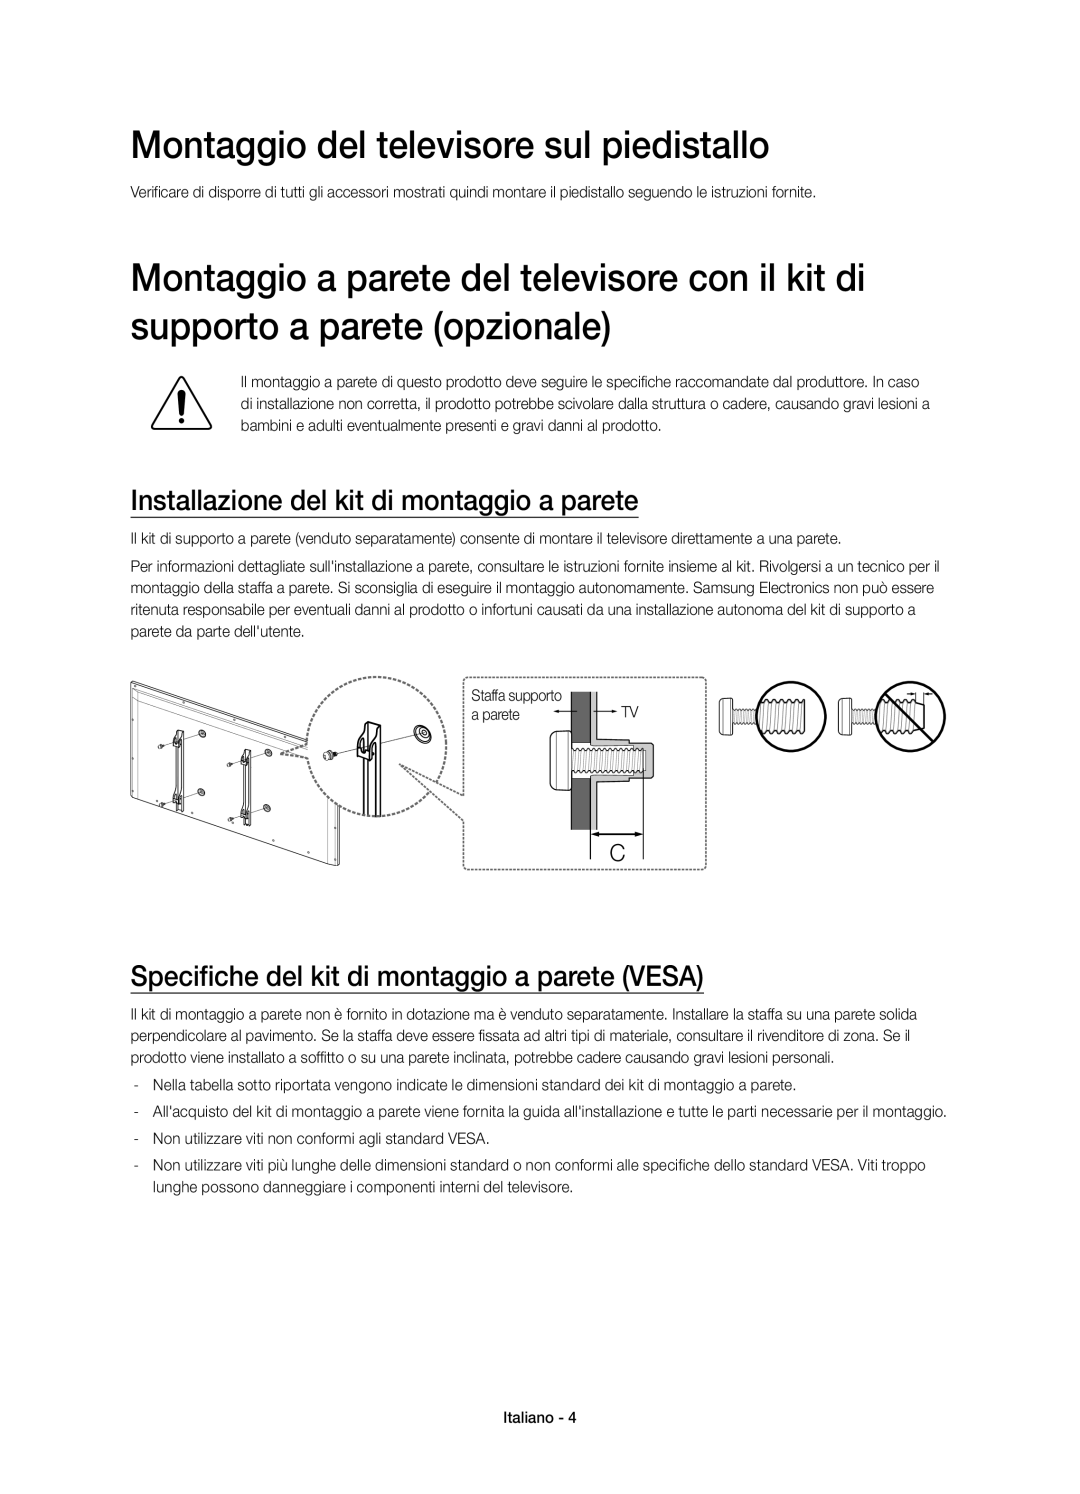 Samsung UE22H5670SSXZG manual Montaggio del televisore sul piedistallo, Installazione del kit di montaggio a parete 